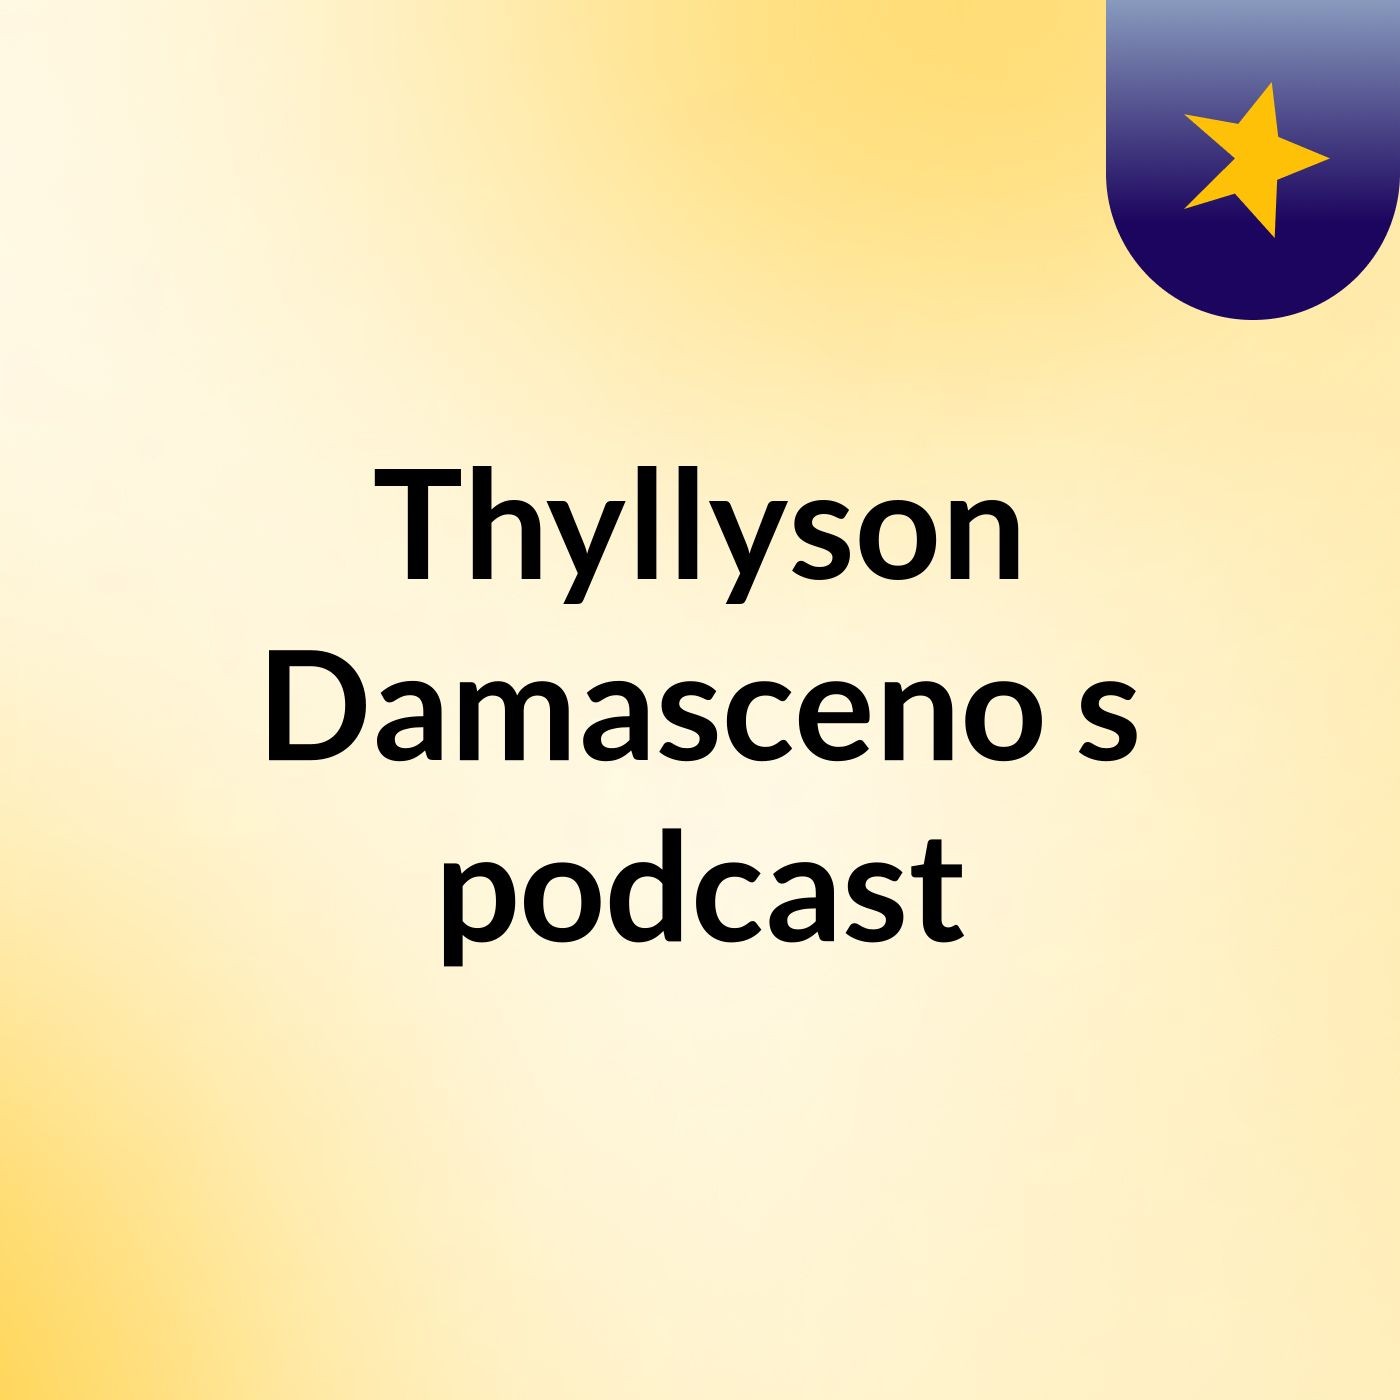 Thyllyson Damasceno's podcast